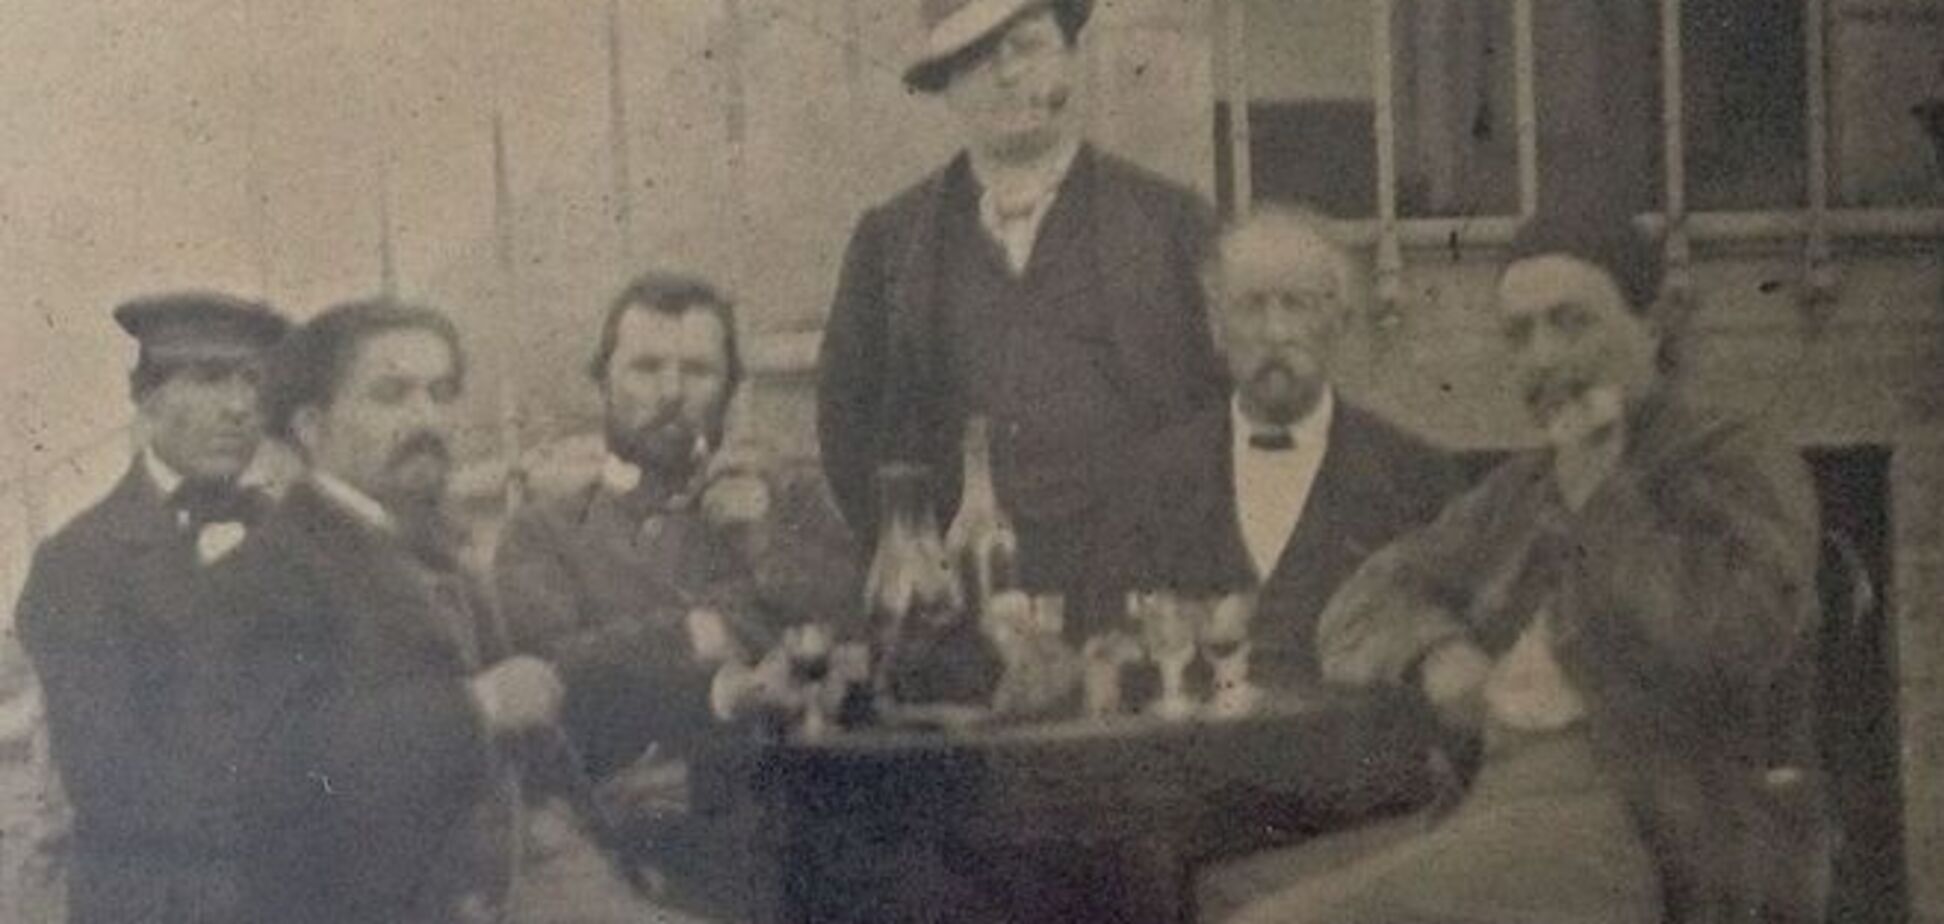 Найден уникальный снимок с Ван Гогом и Гогеном. Фотофакт